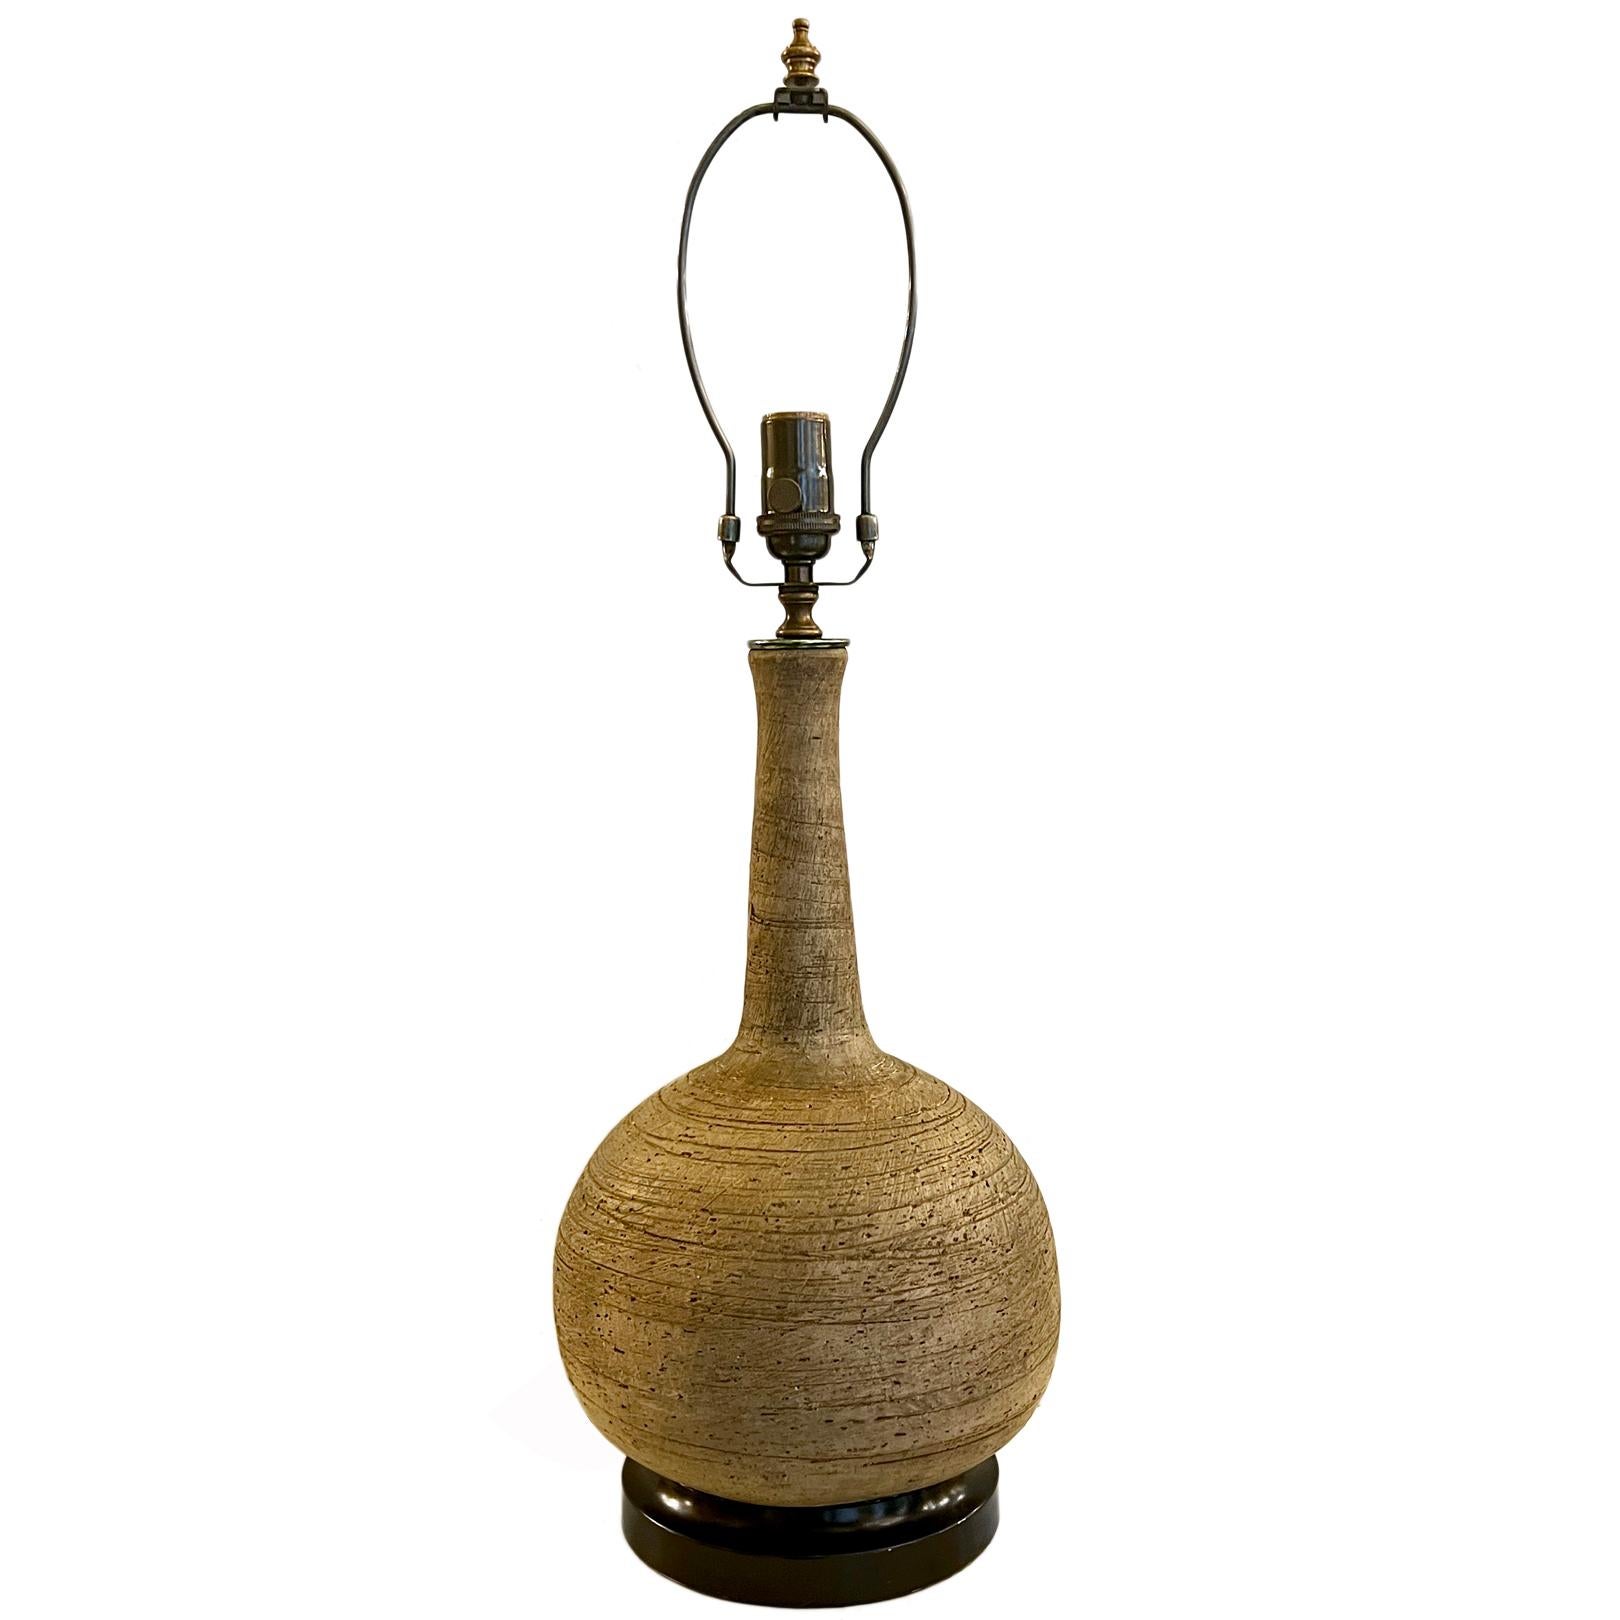 Eine italienische unglasierte Keramik-Tischlampe aus der Mitte des Jahrhunderts (CIRCA 1950) mit Holzfuß.

Abmessungen:
Höhe des Körpers: 17